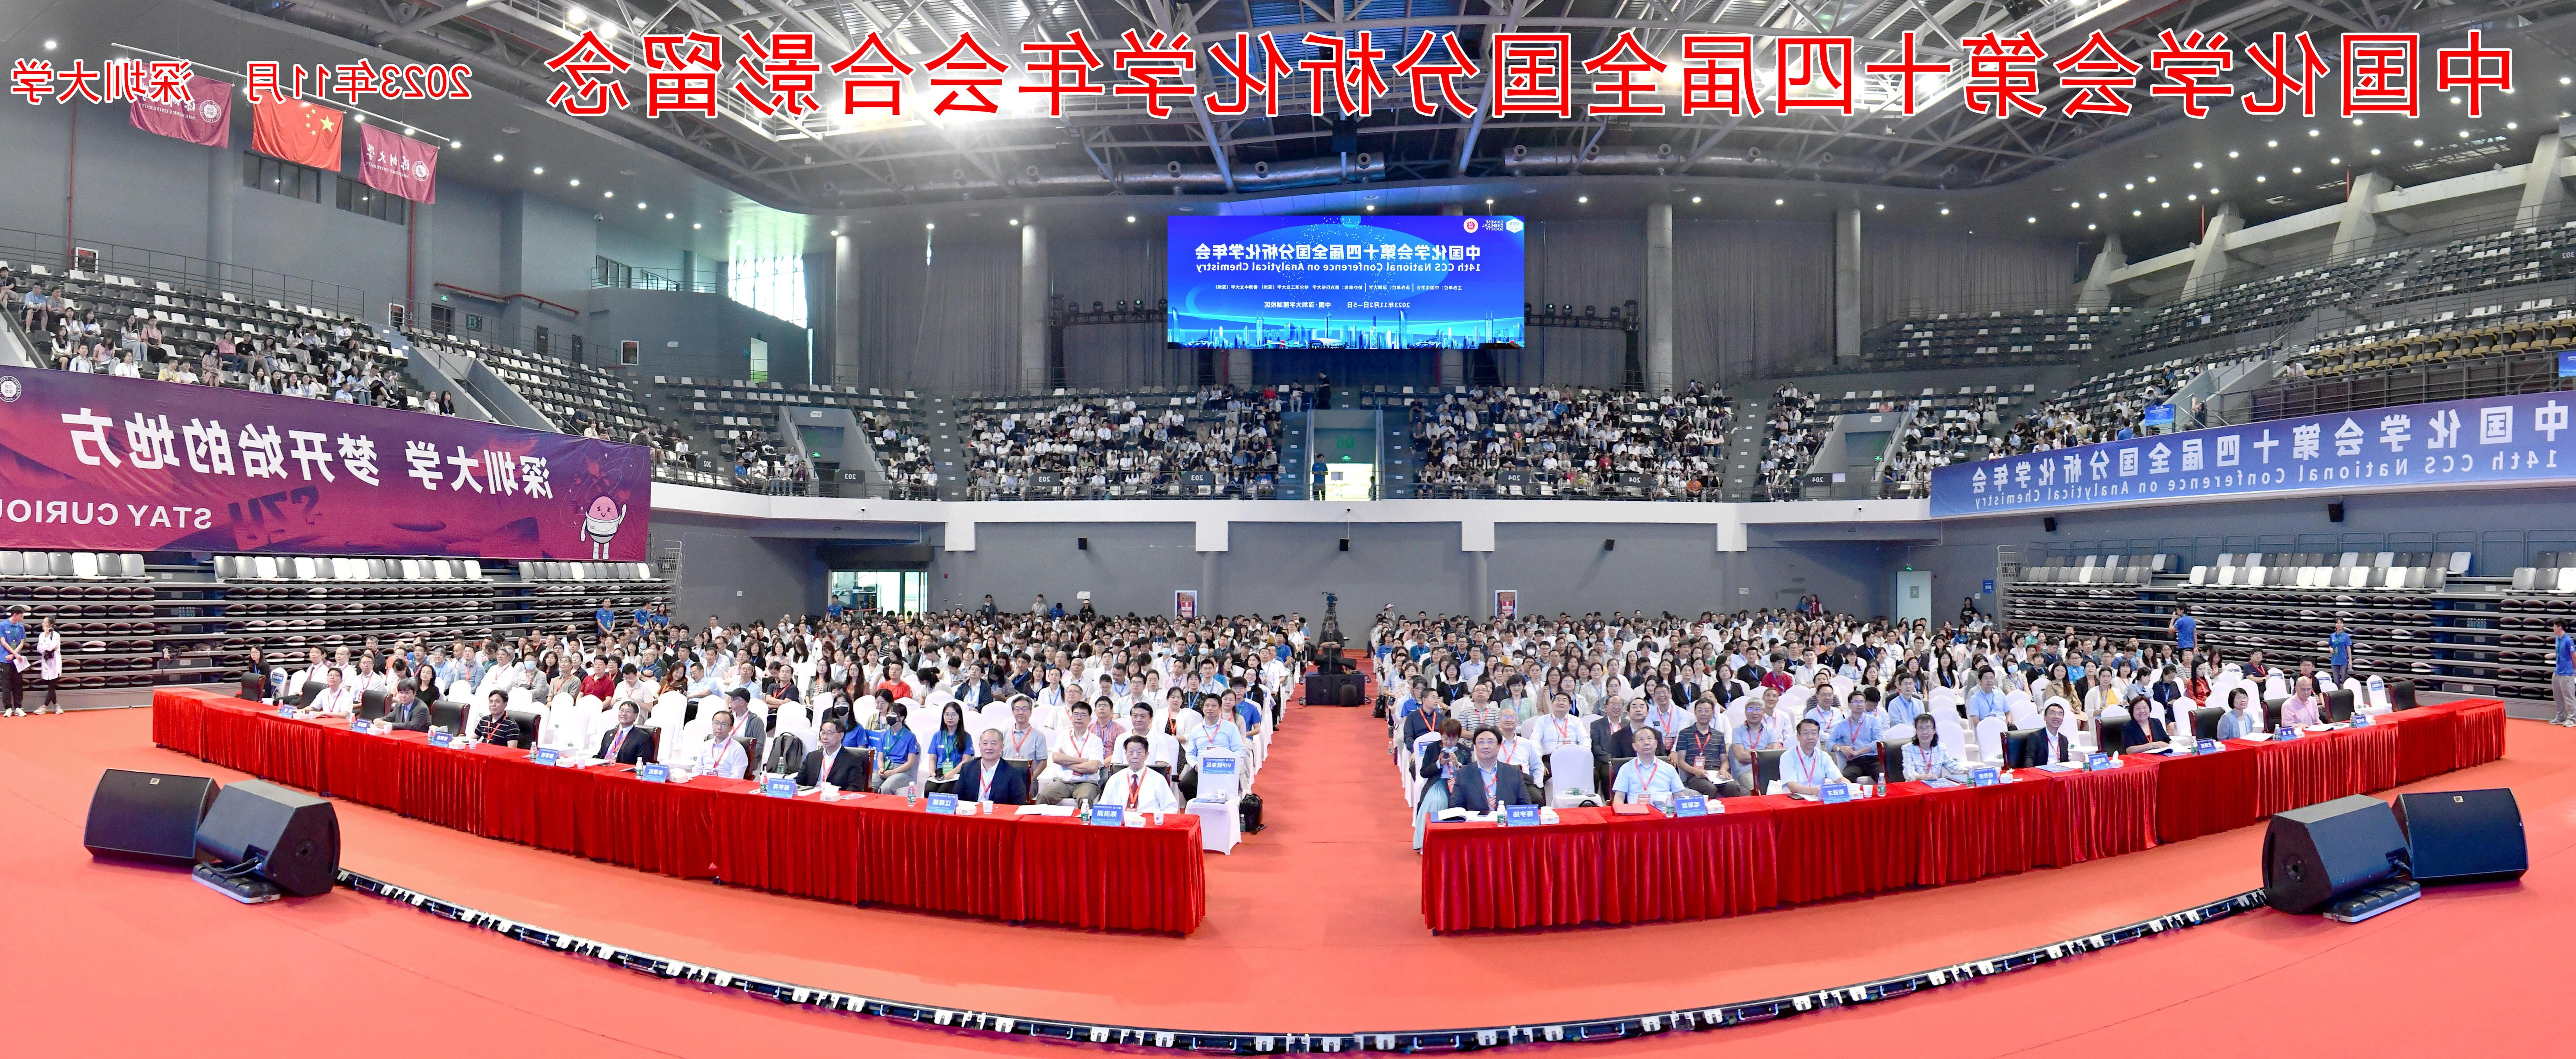 第十四届全国分析化学年会在深圳大学召开  3000余专家学者共话“分析化学进展与未来”